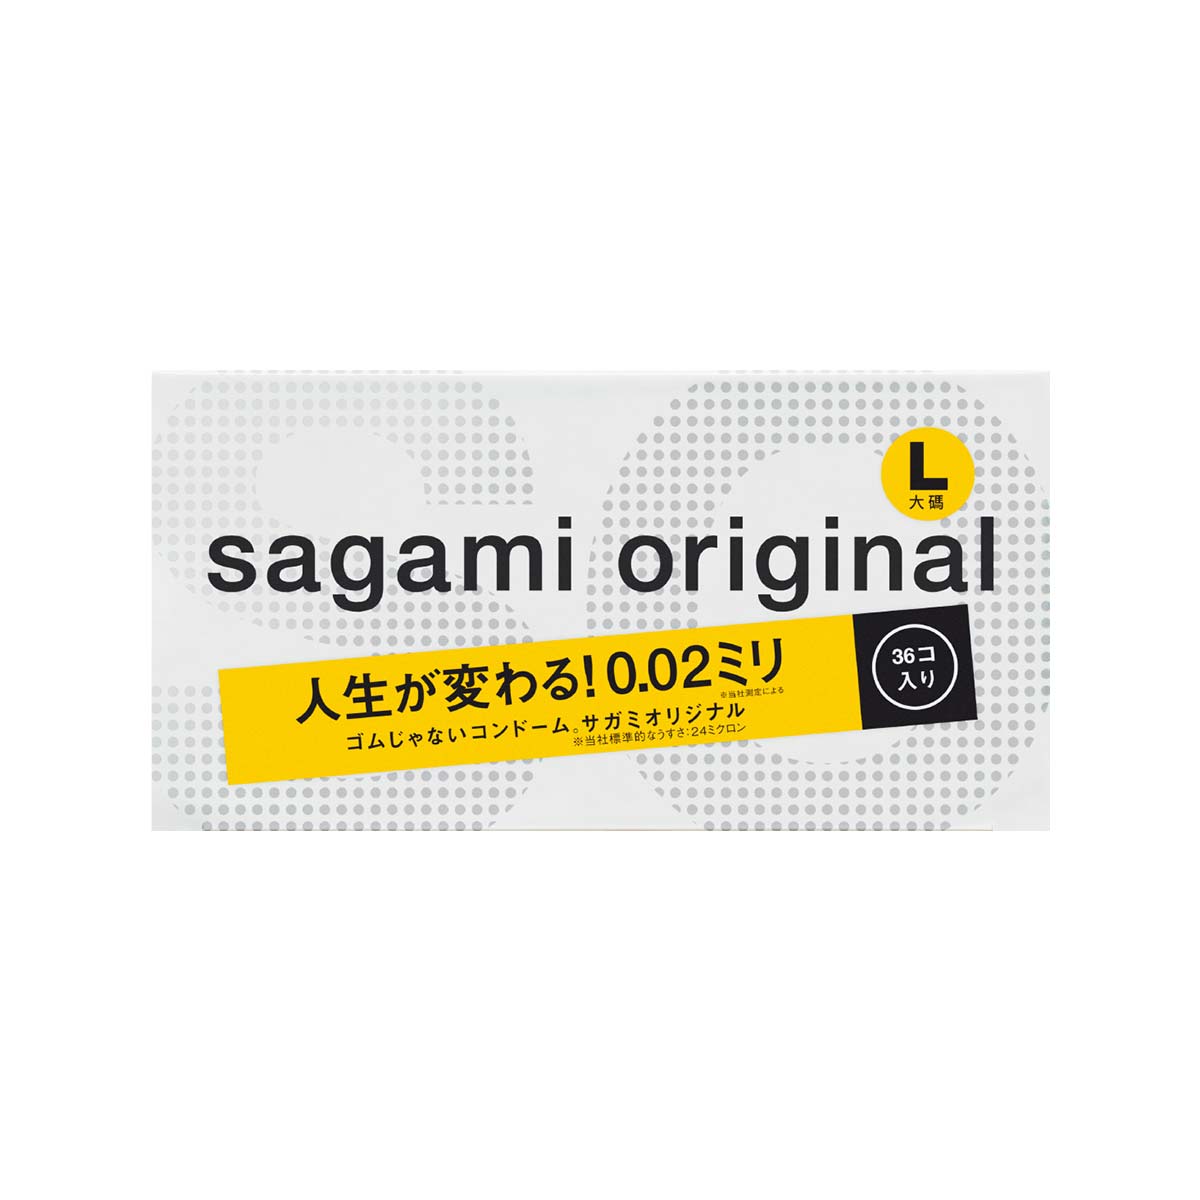 Sagami Original 0.02 L-size (2nd generation) 58mm 36's Pack PU Condom-p_2